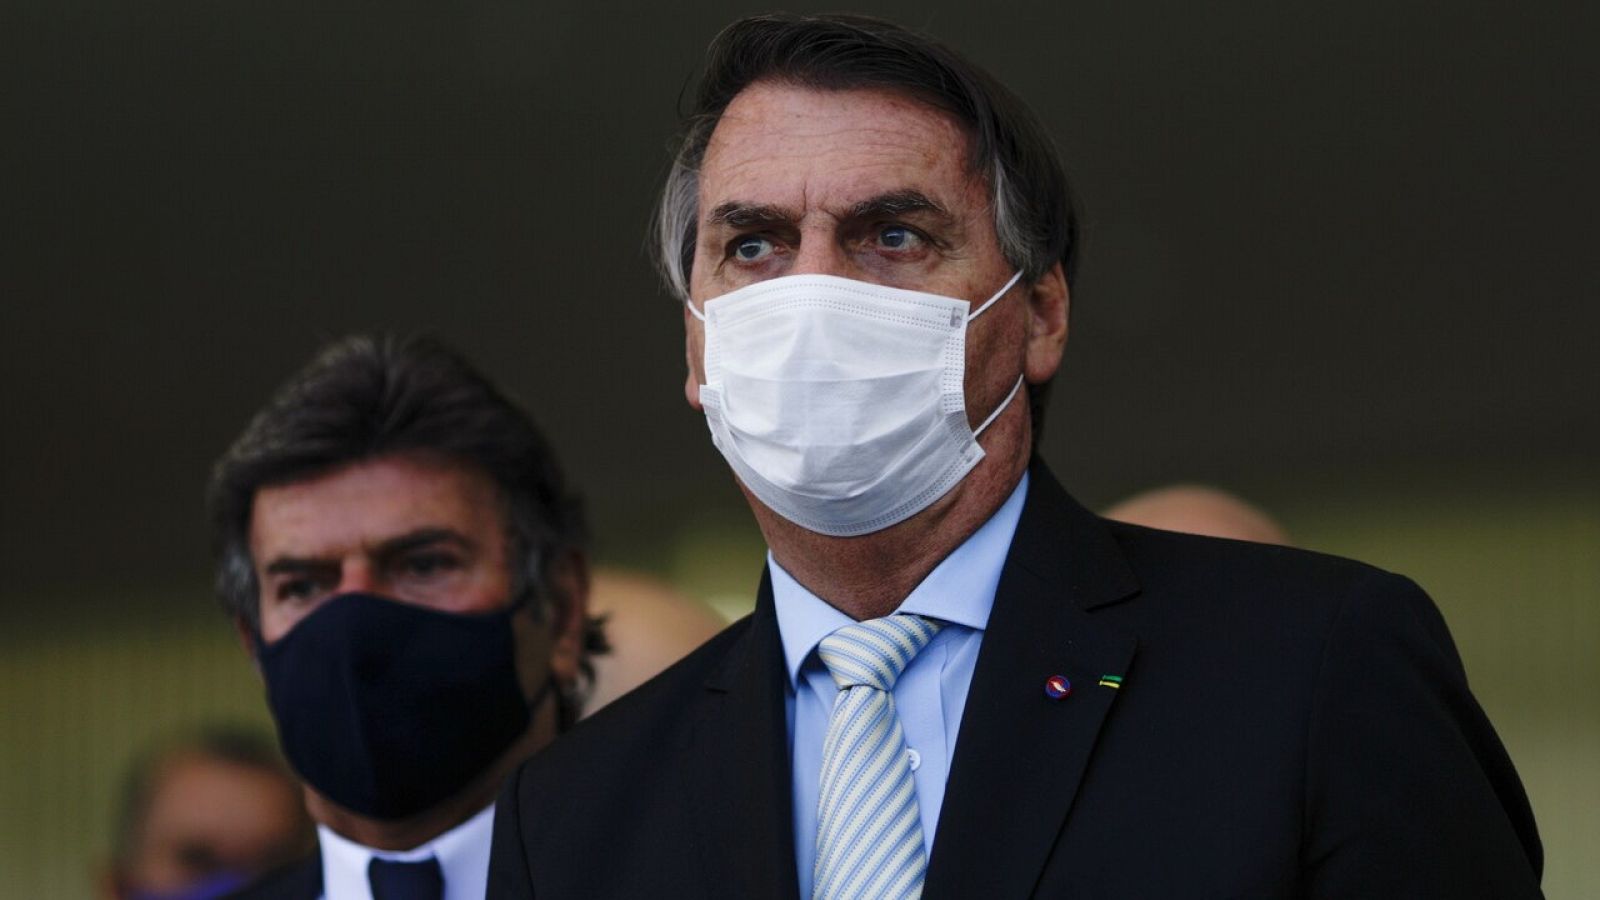 El estado crítico en Brasil por la pandemia obliga a Bolsonaro a cambiar su discurso y pedir un pacto nacional